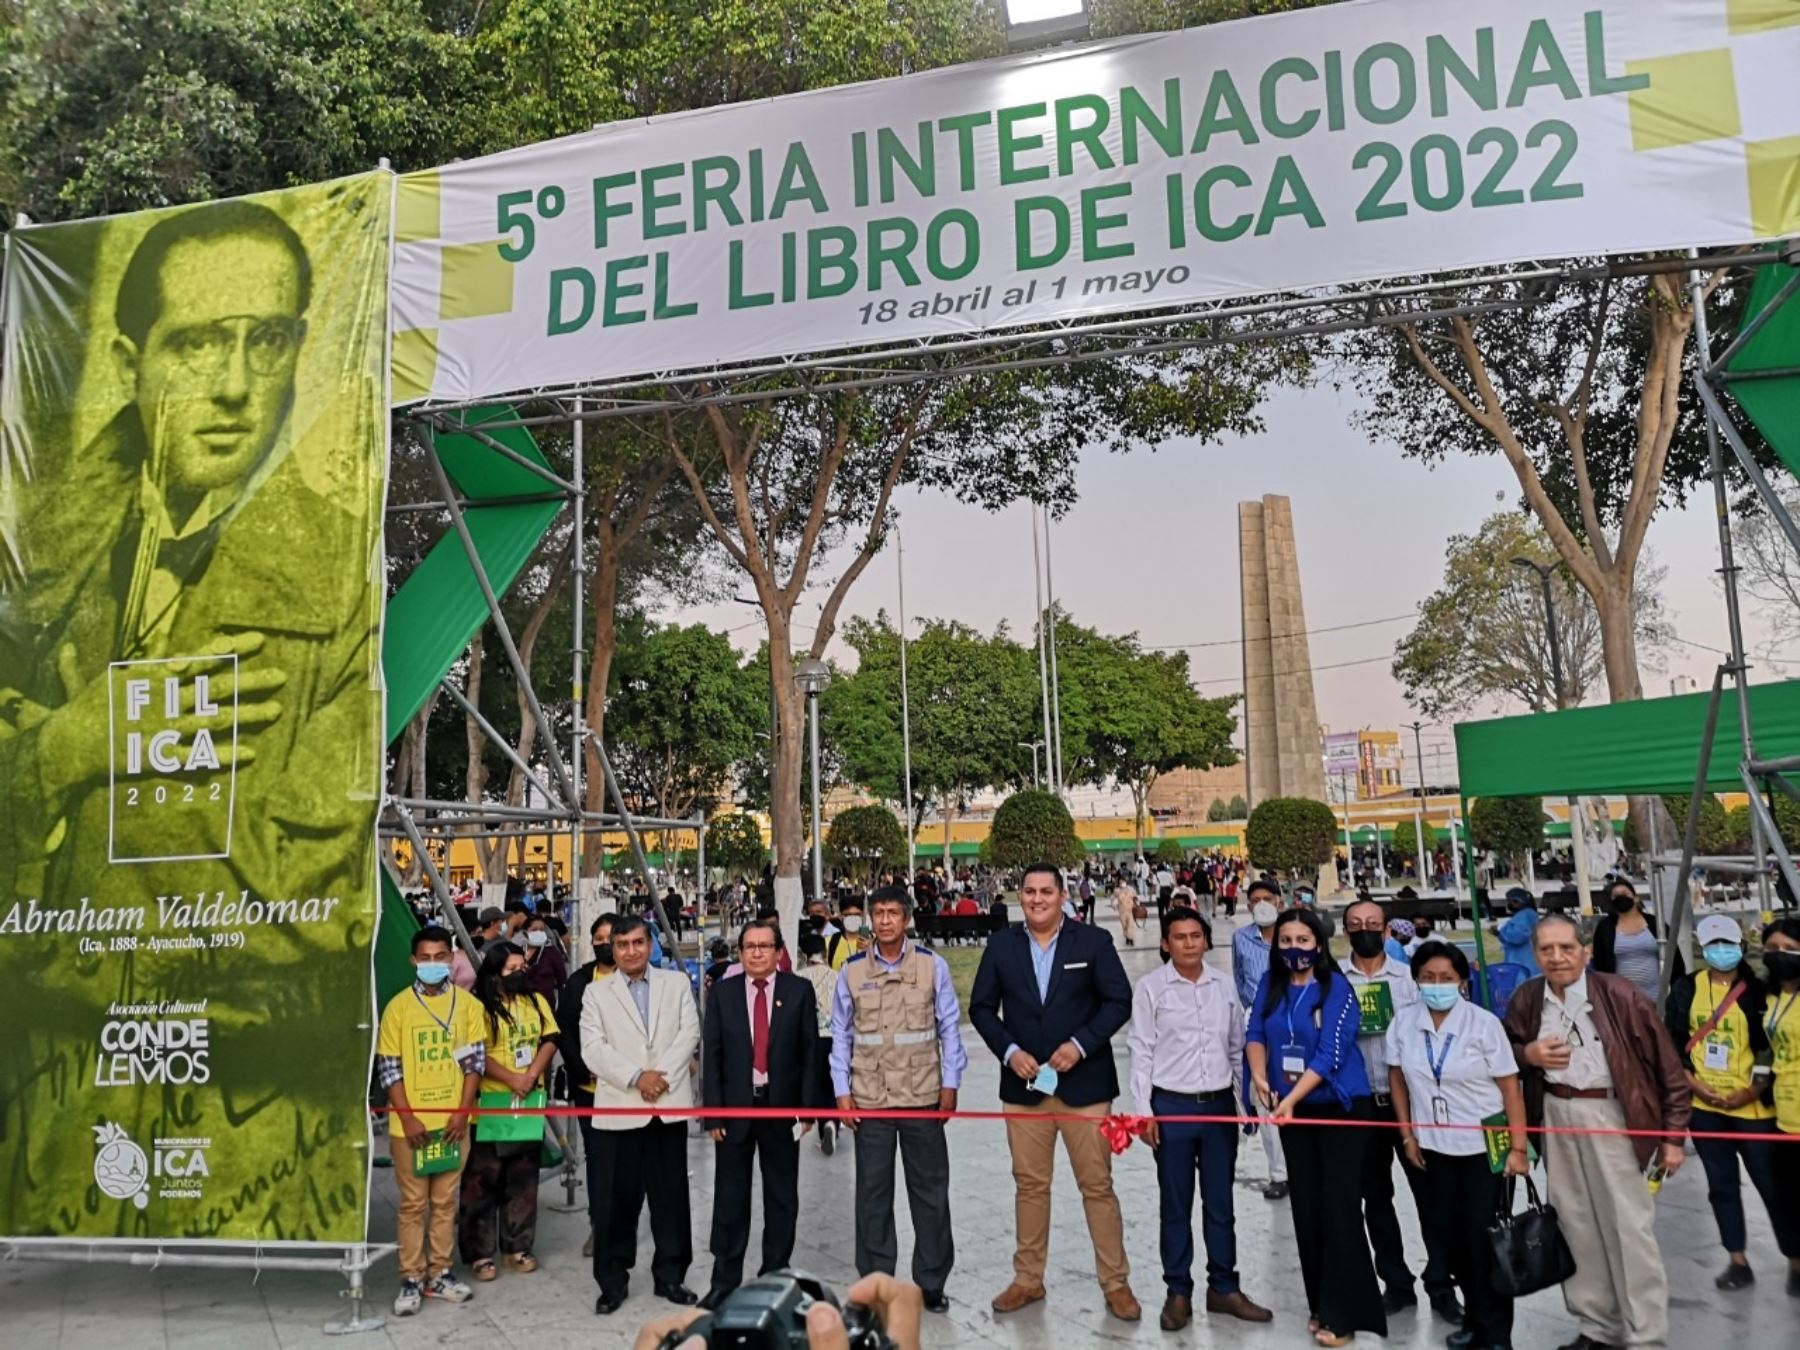 Ica resalta asistencia de más de 95,000 personas a la Feria Internacional del Libro